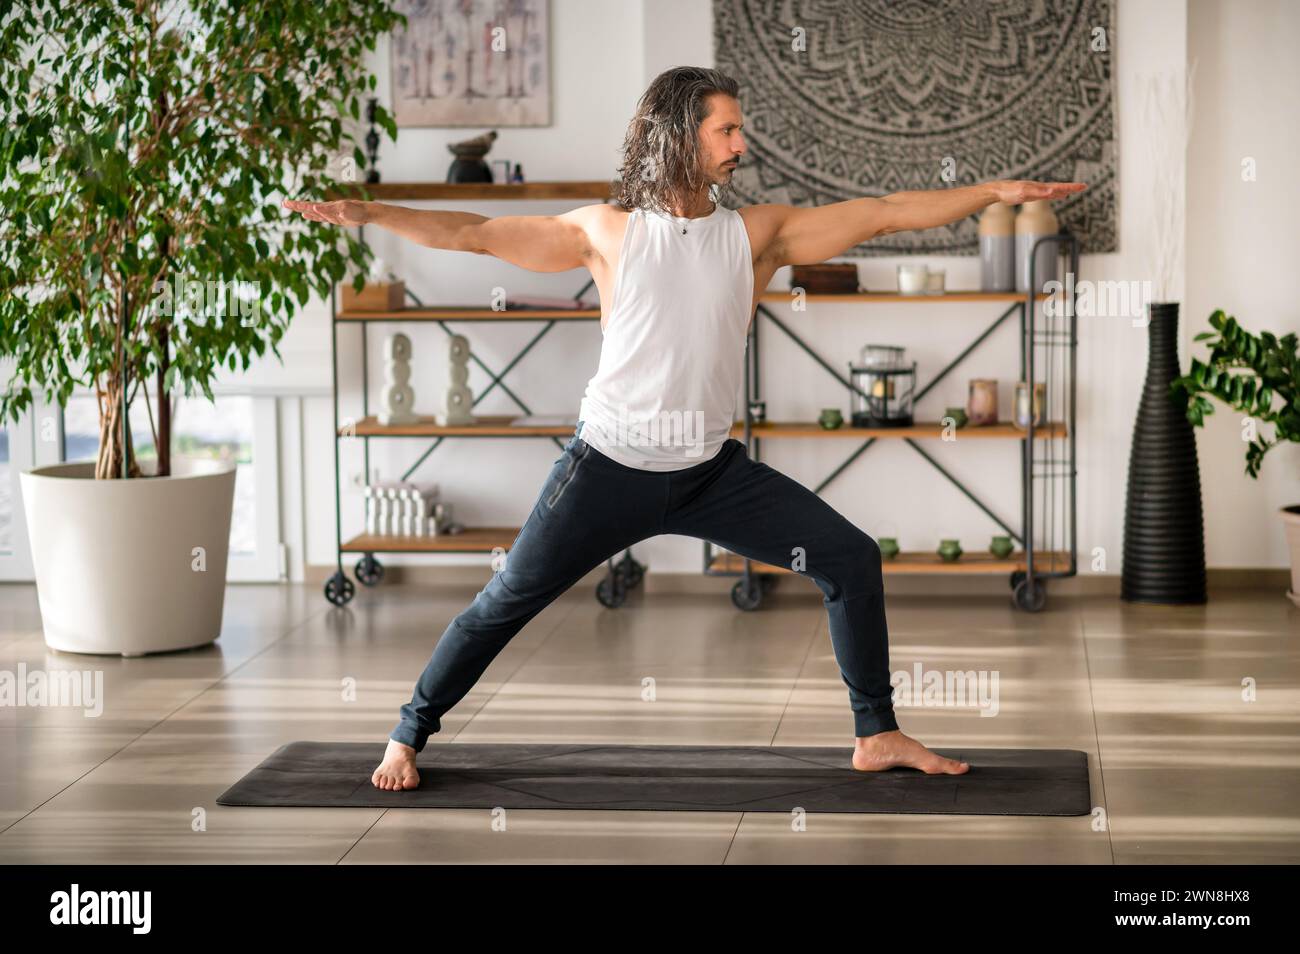 Starker barfüßiger Kerl in Aktivkleidung, der Virabhadrasana während des Yoga-Workouts auf der Matte in einem modernen, mit Topfpflanzen und Töpfen dekorierten Fitnessstudio spielt Stockfoto